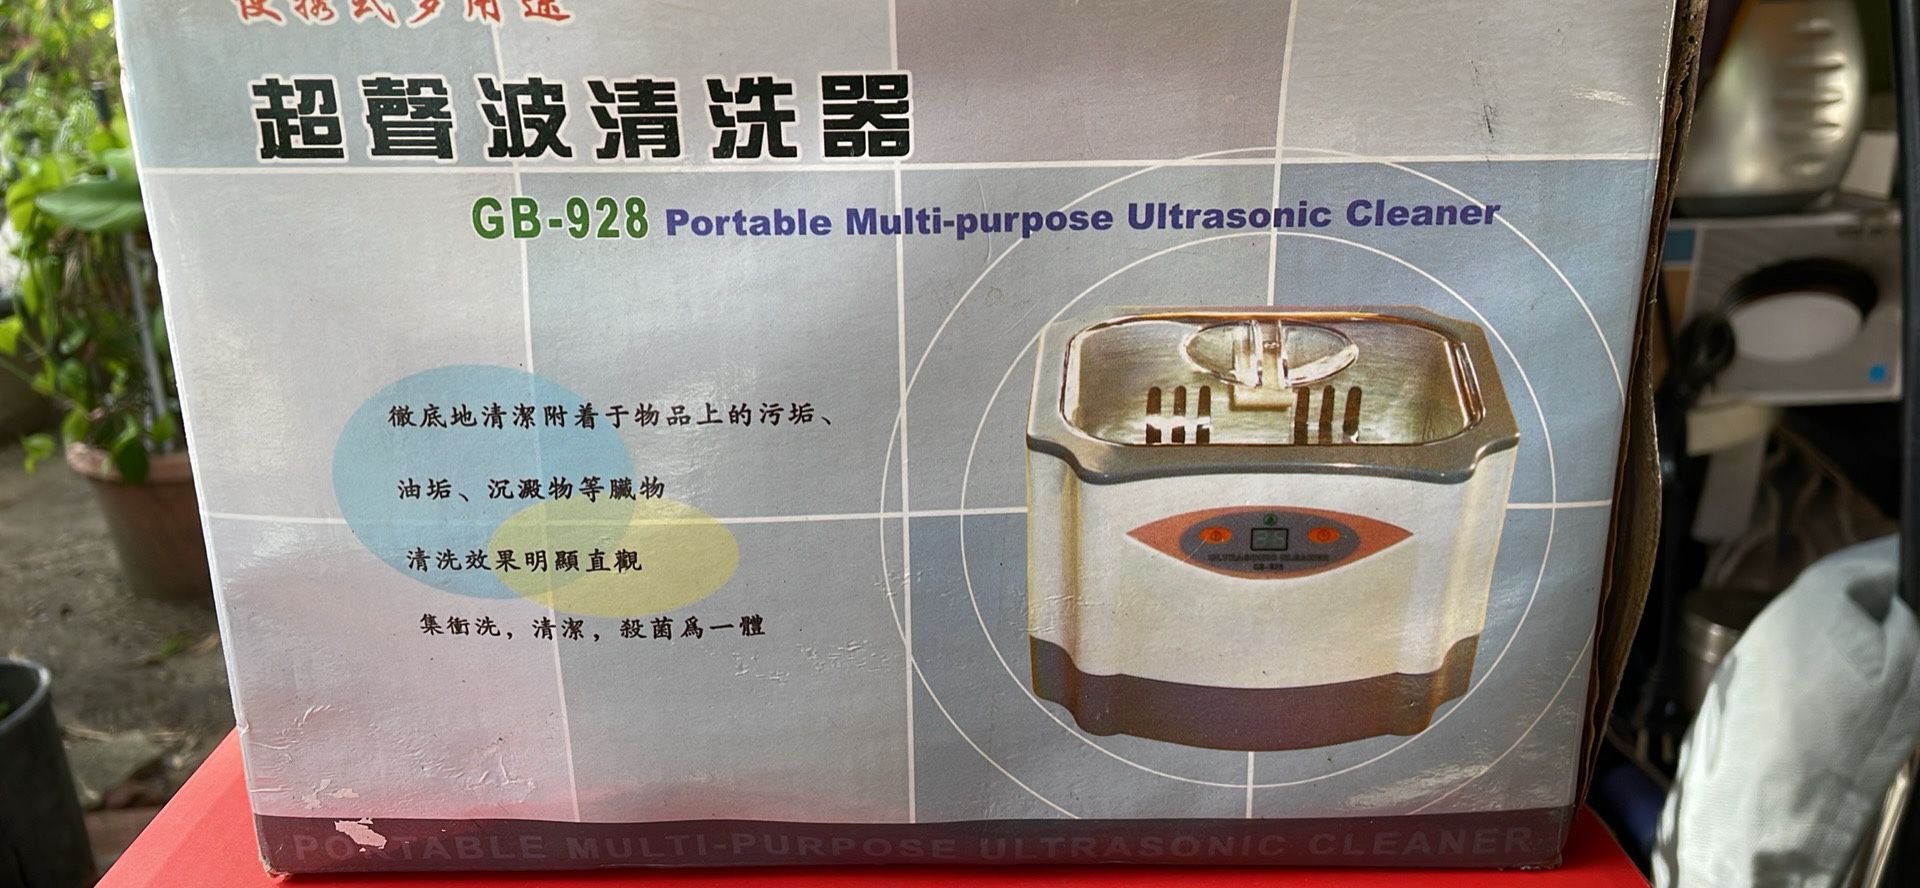 Portable Multipurpose Ultrasonic Cleaner Model GB- 928